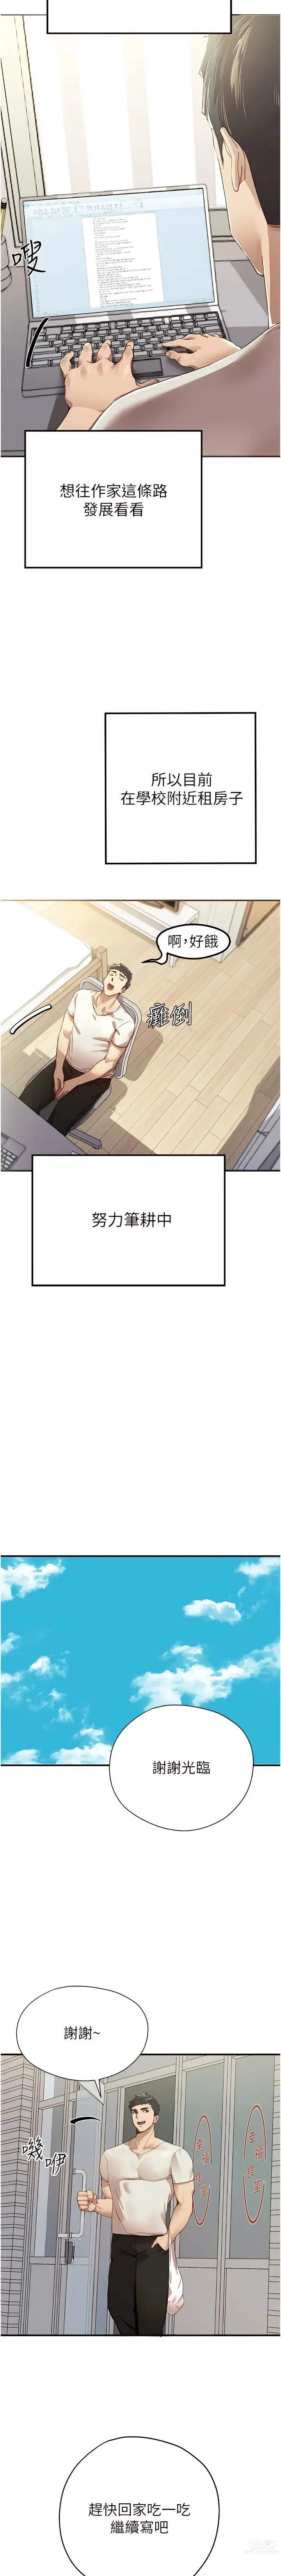 Page 5 of manga 初次深交，请多指教 1-39